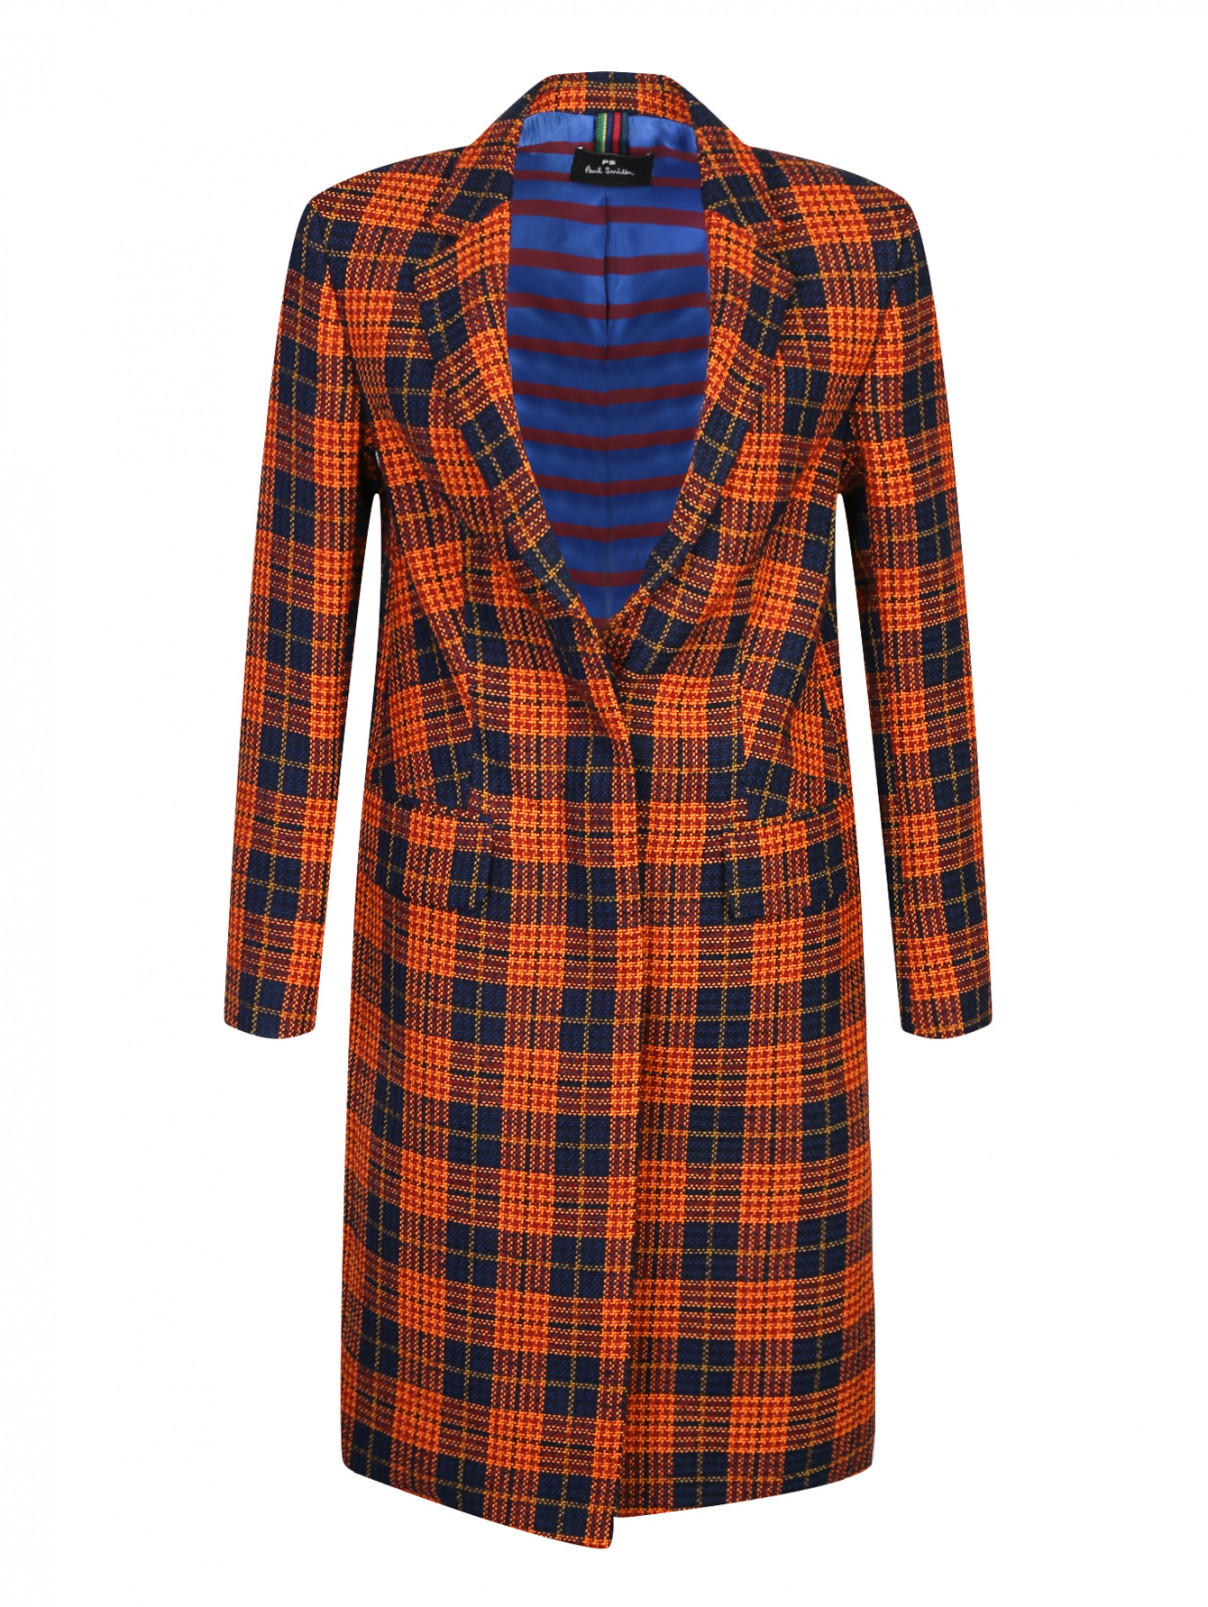 Однобортное пальто с узором "клетка" Paul Smith  –  Общий вид  – Цвет:  Оранжевый